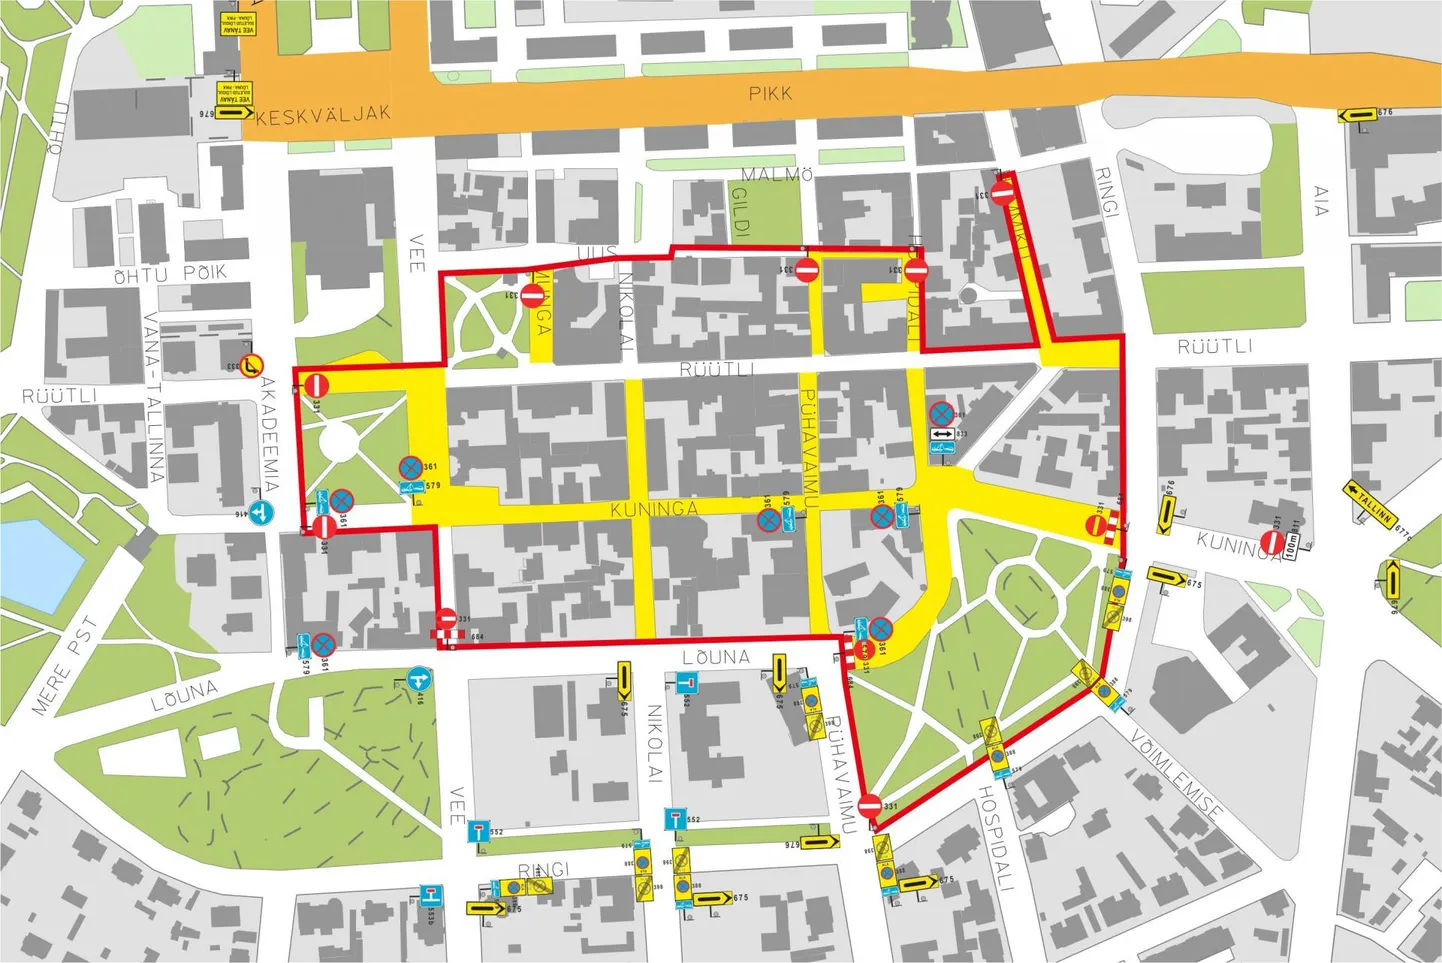 Augustiunetuse alal on parkimiskeeluga märgitud kollased tänavad ja festivali ala ümbritsetud punase joonega.